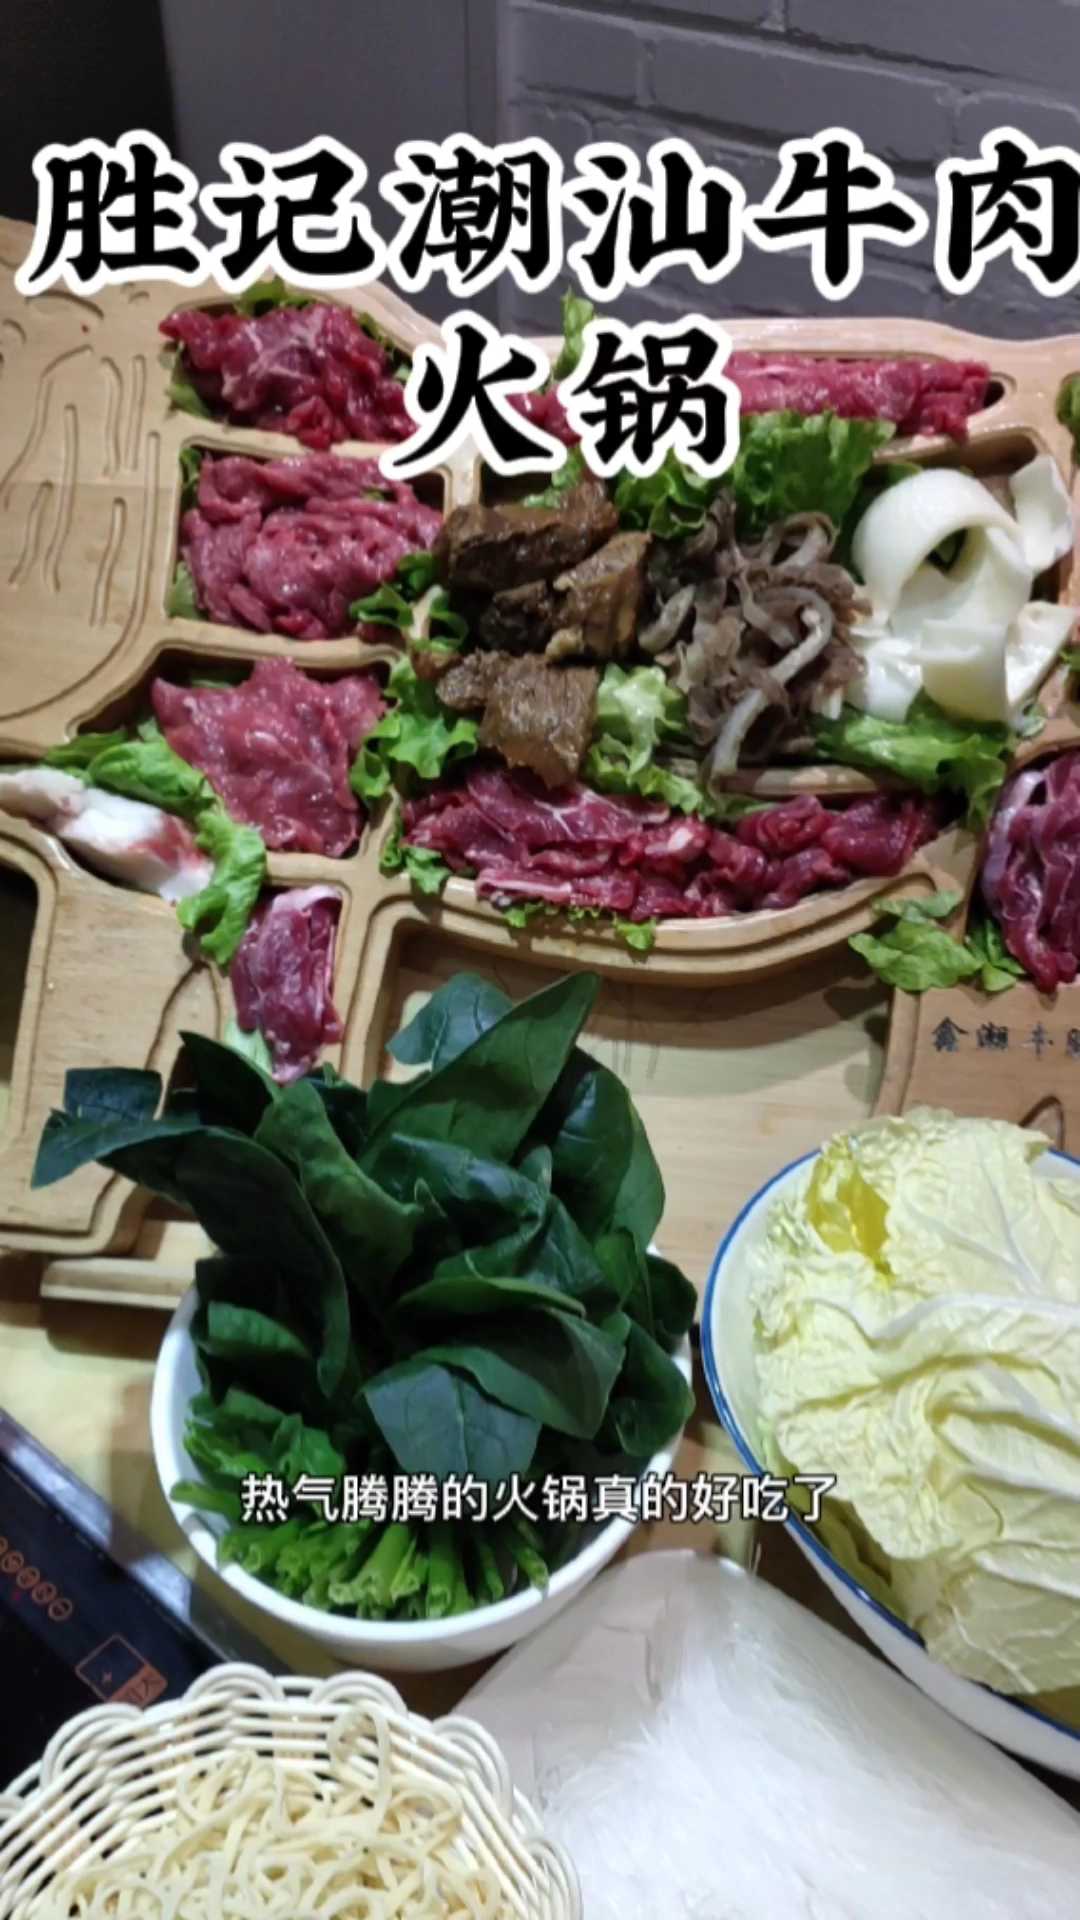 潮汕牛肉火锅店